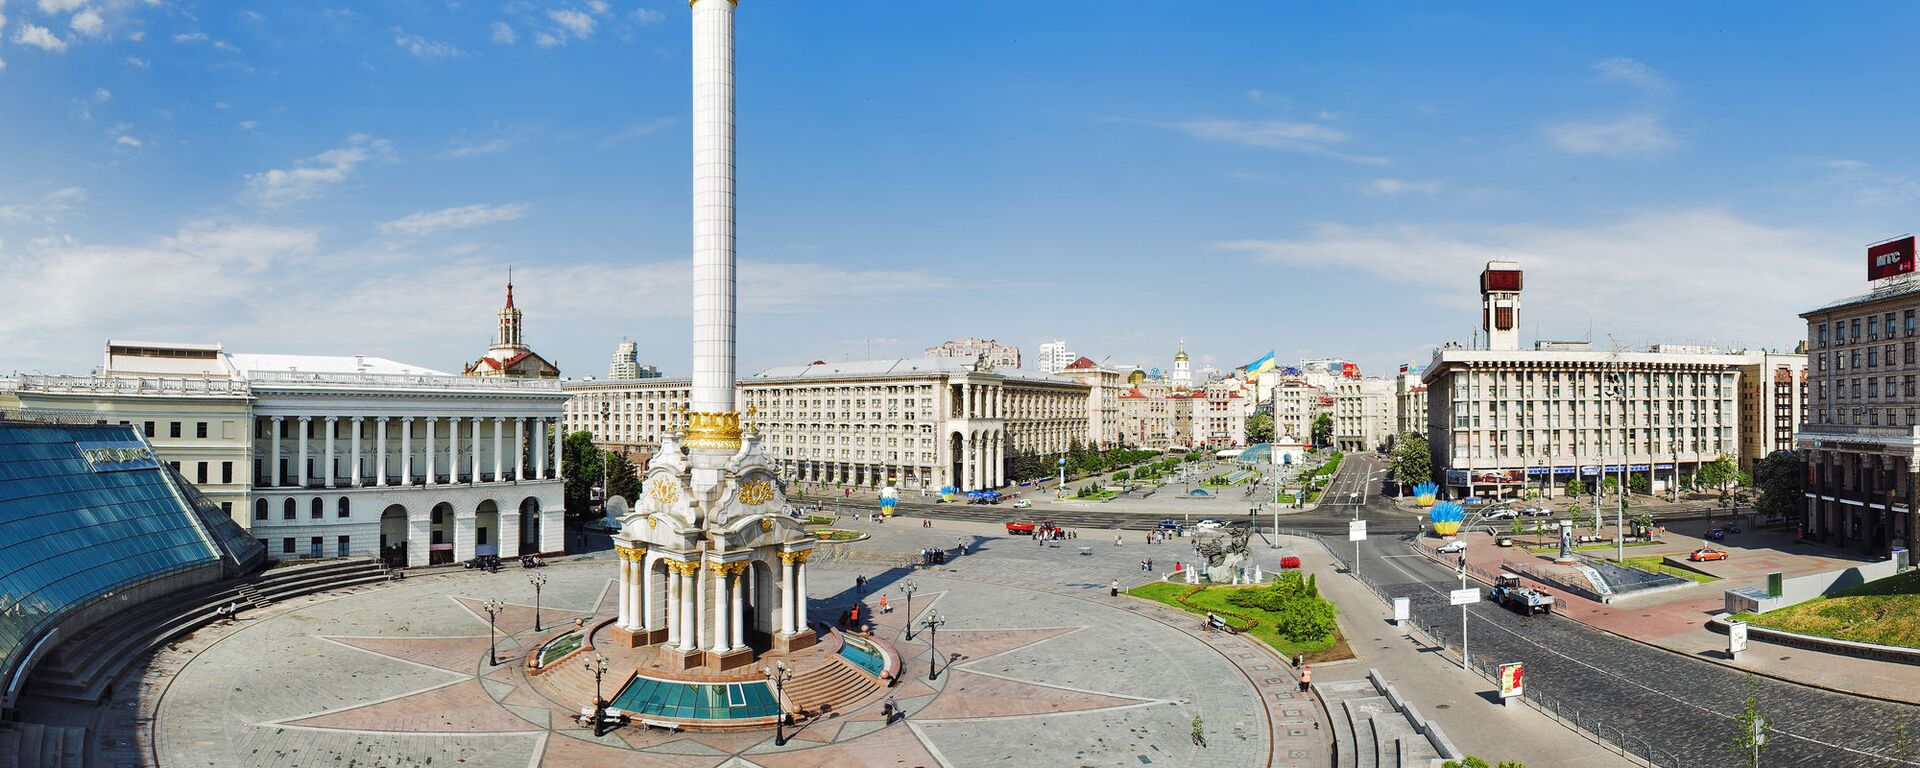 Площадь Независимости в Киеве, архивное фото - Sputnik Литва, 1920, 12.06.2021